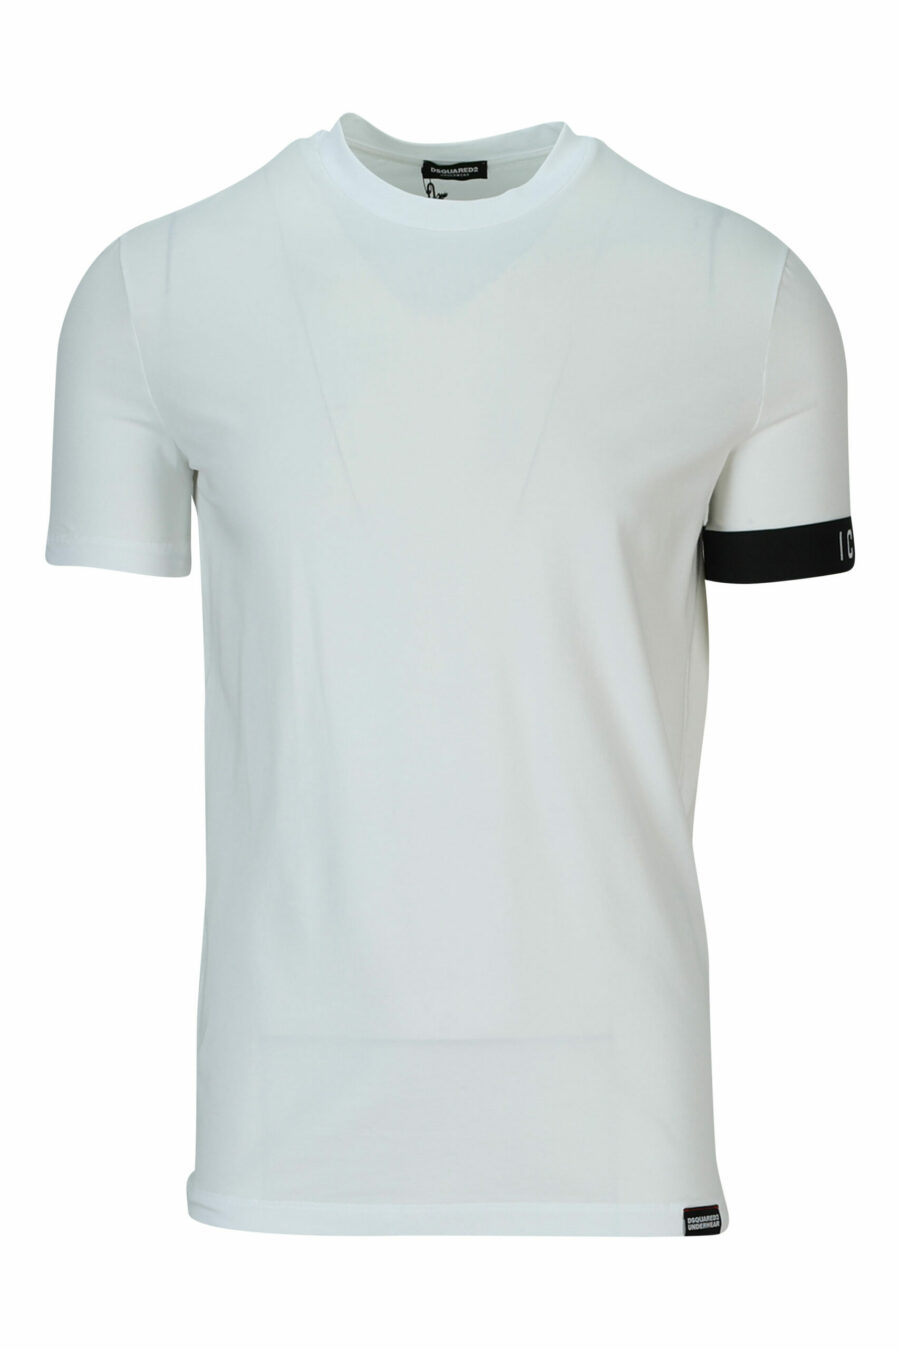 T-shirt branca com logótipo preto - 8032674767493 scaled